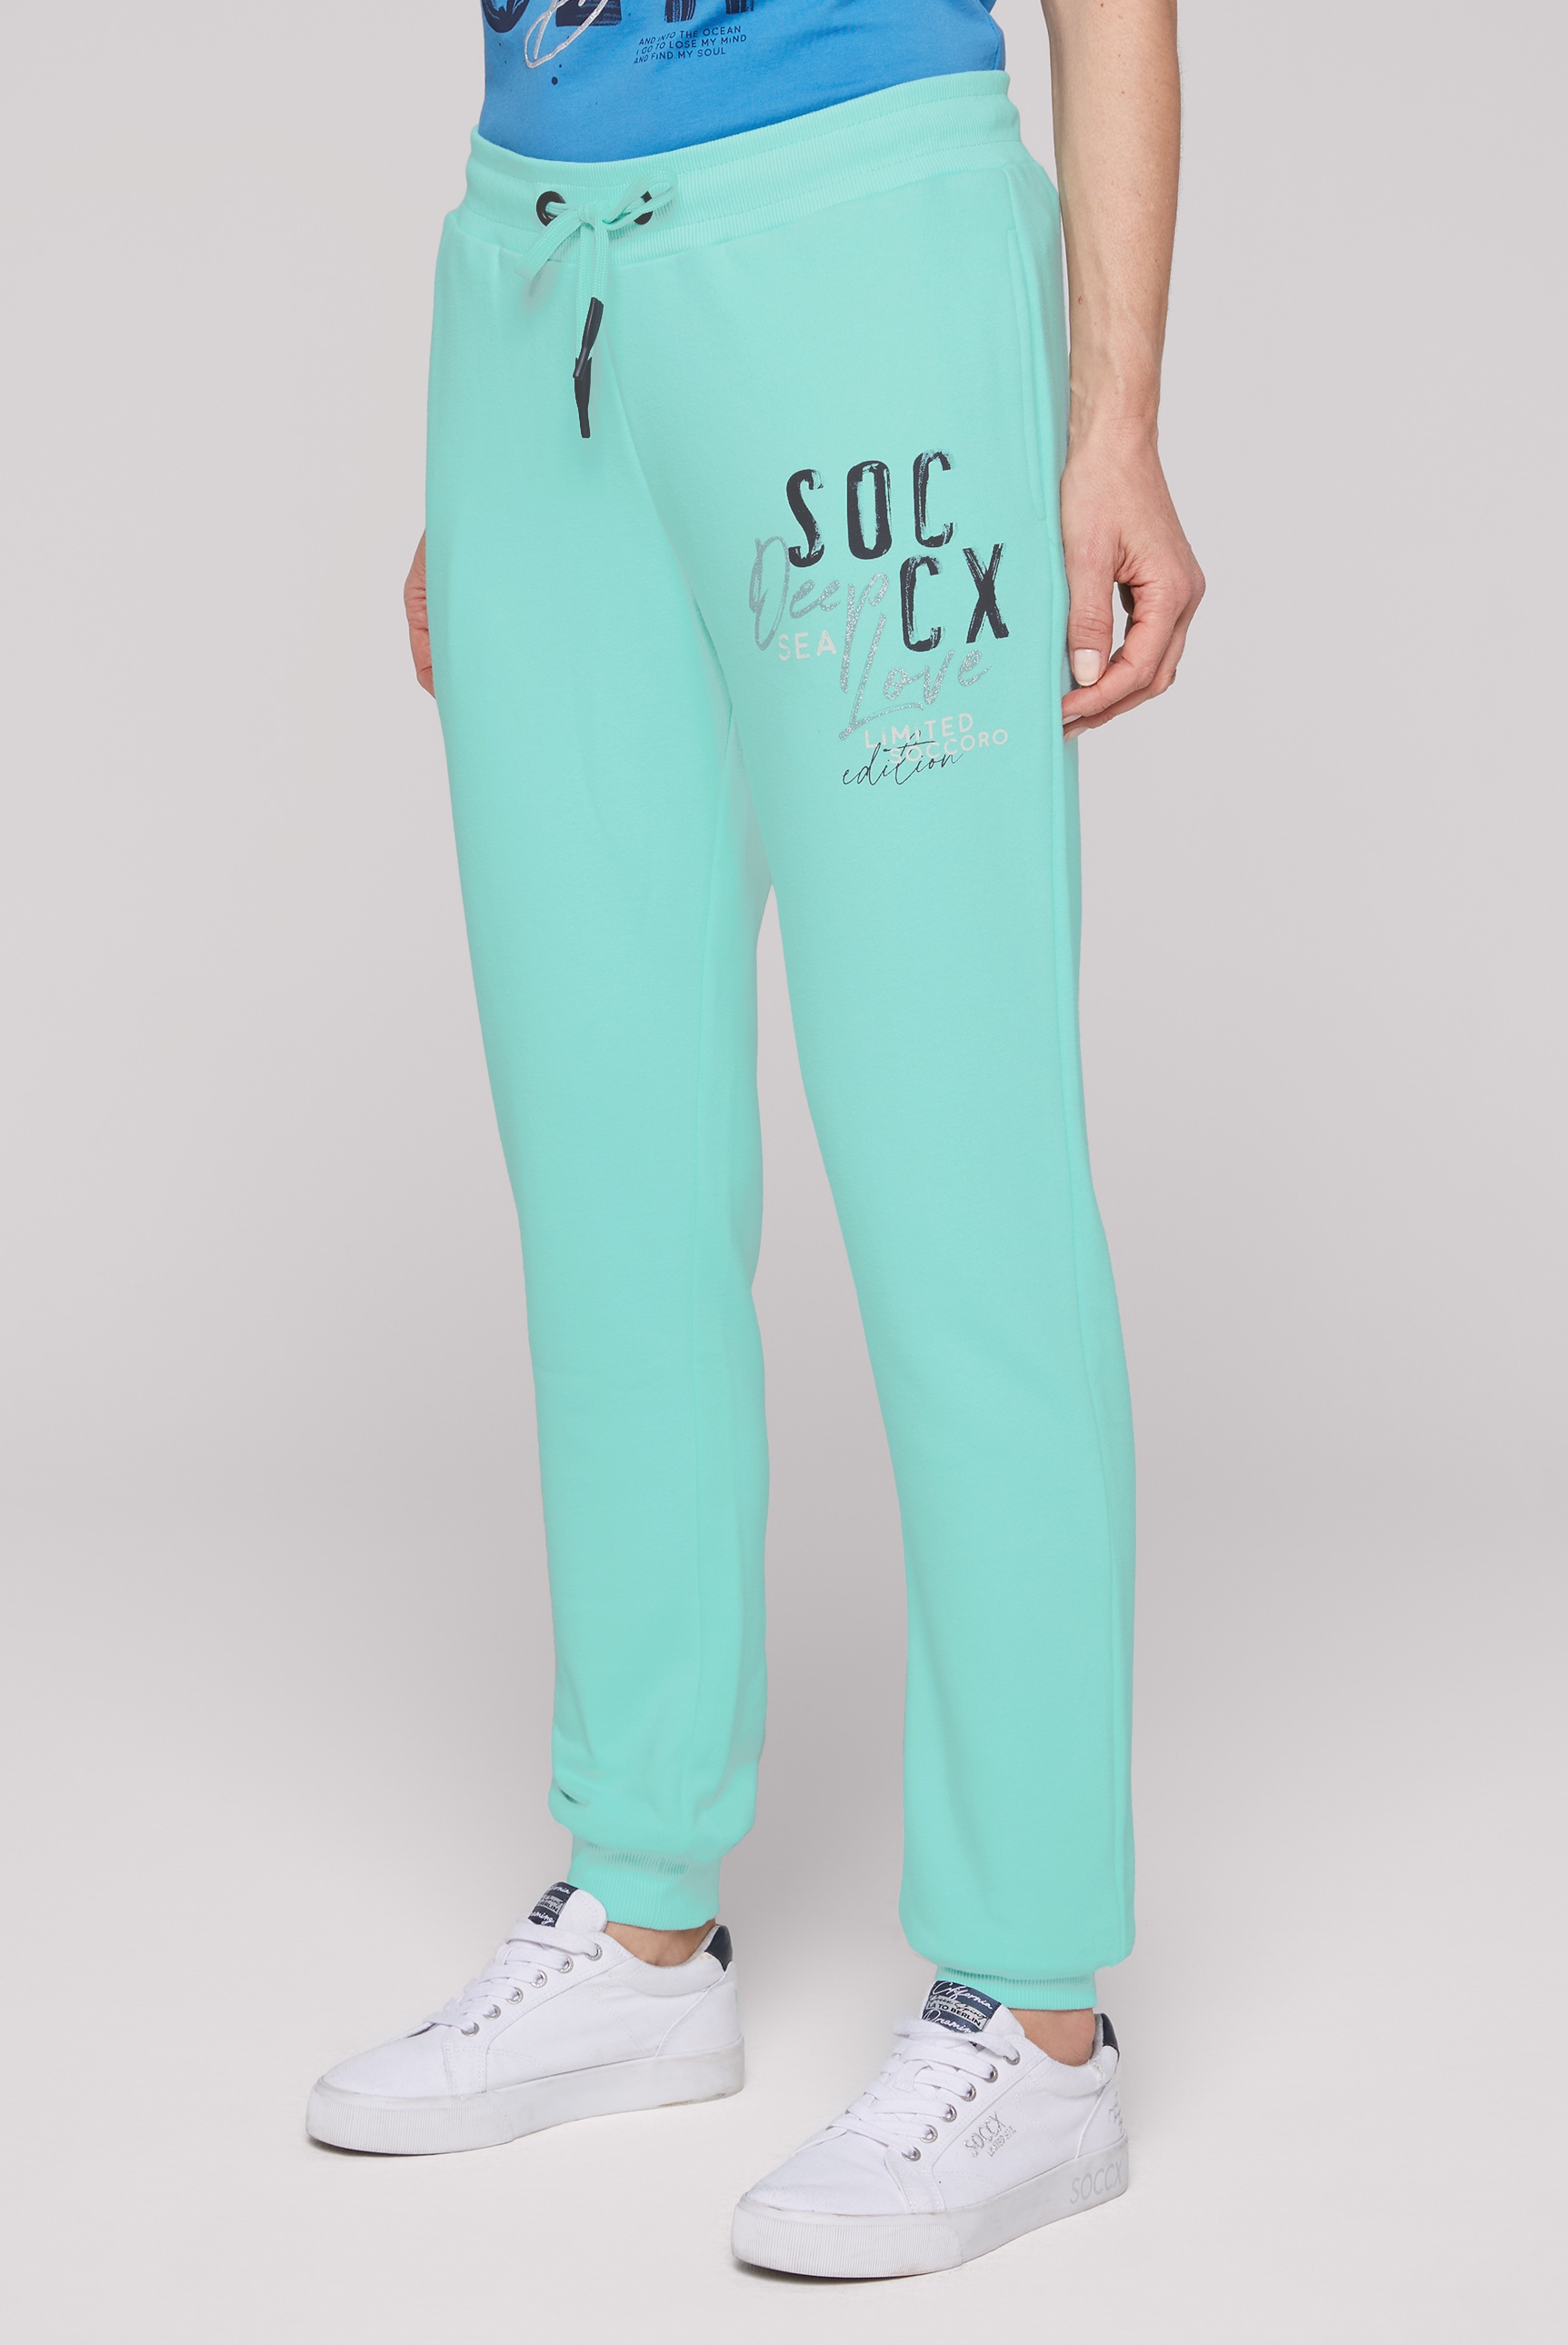 SOCCX Sporthose, mit Elastikbund und | BAUR bestellen für Kordel